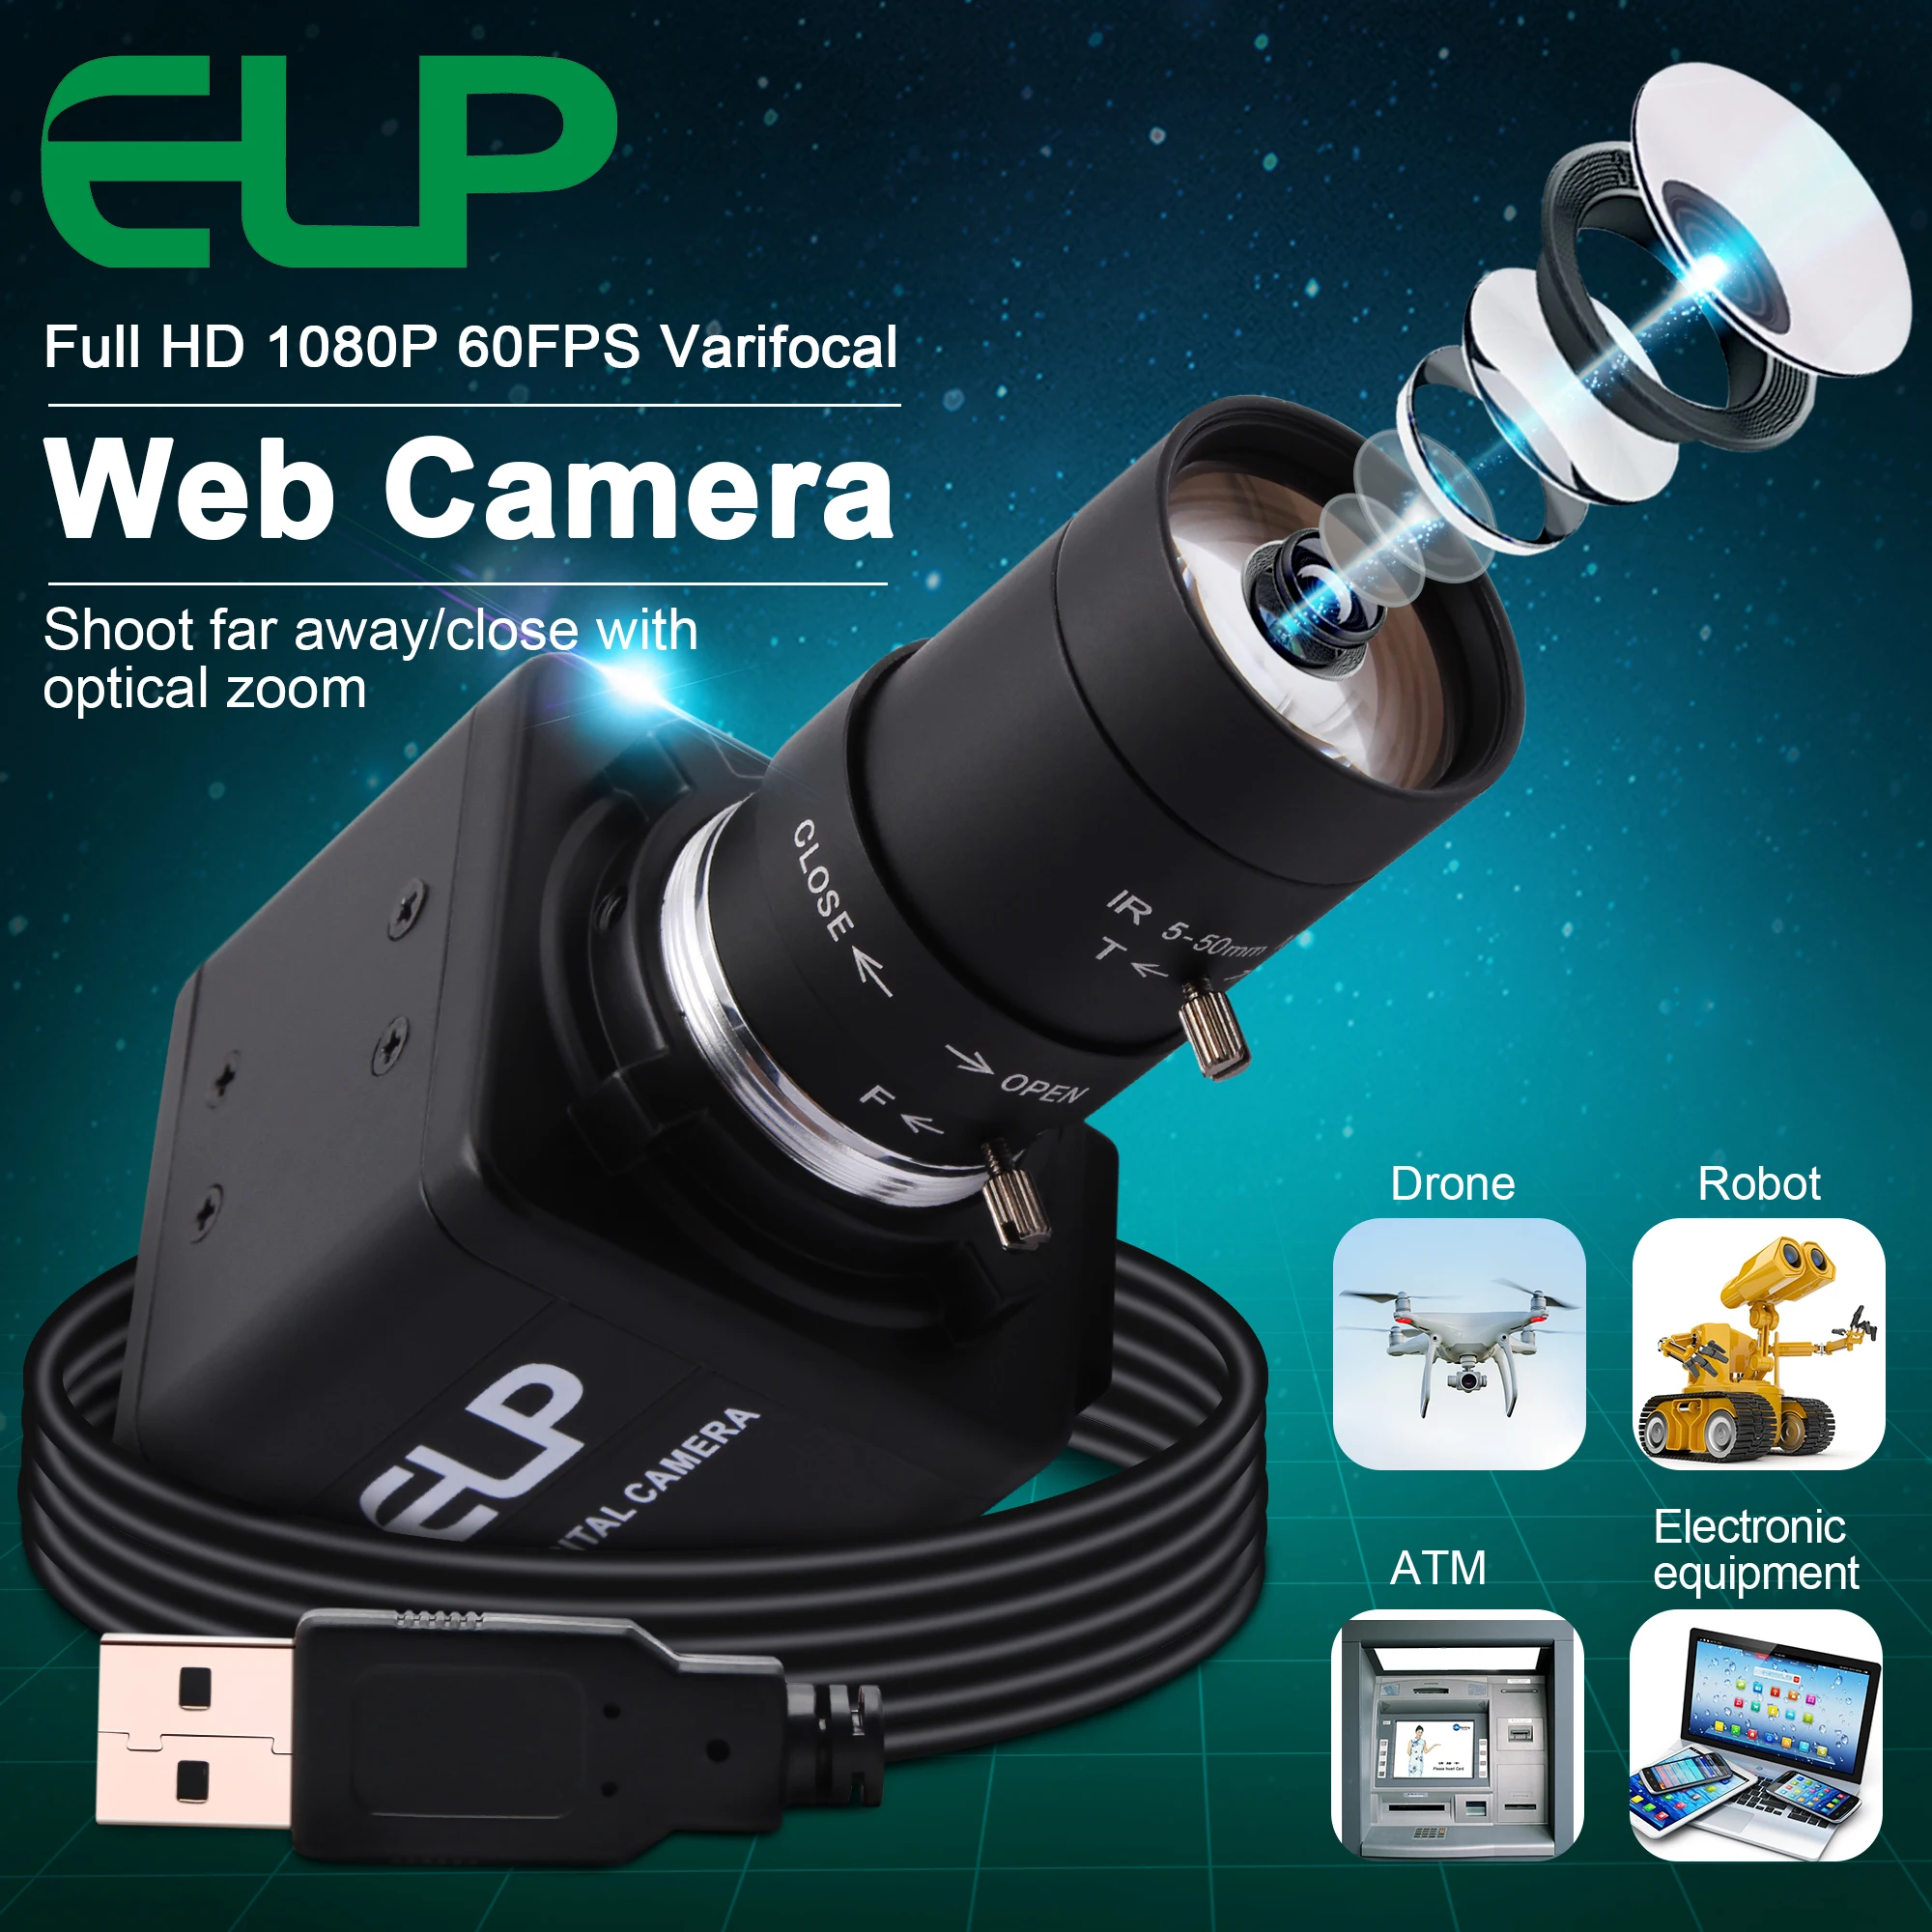 1080P Ipari Webkamera nagysebességű MJPEG 260fps/120fps/60fps OmniVision OV4689 CMOS Video USB Kamera, Varifokális Zoom CS Lencse0